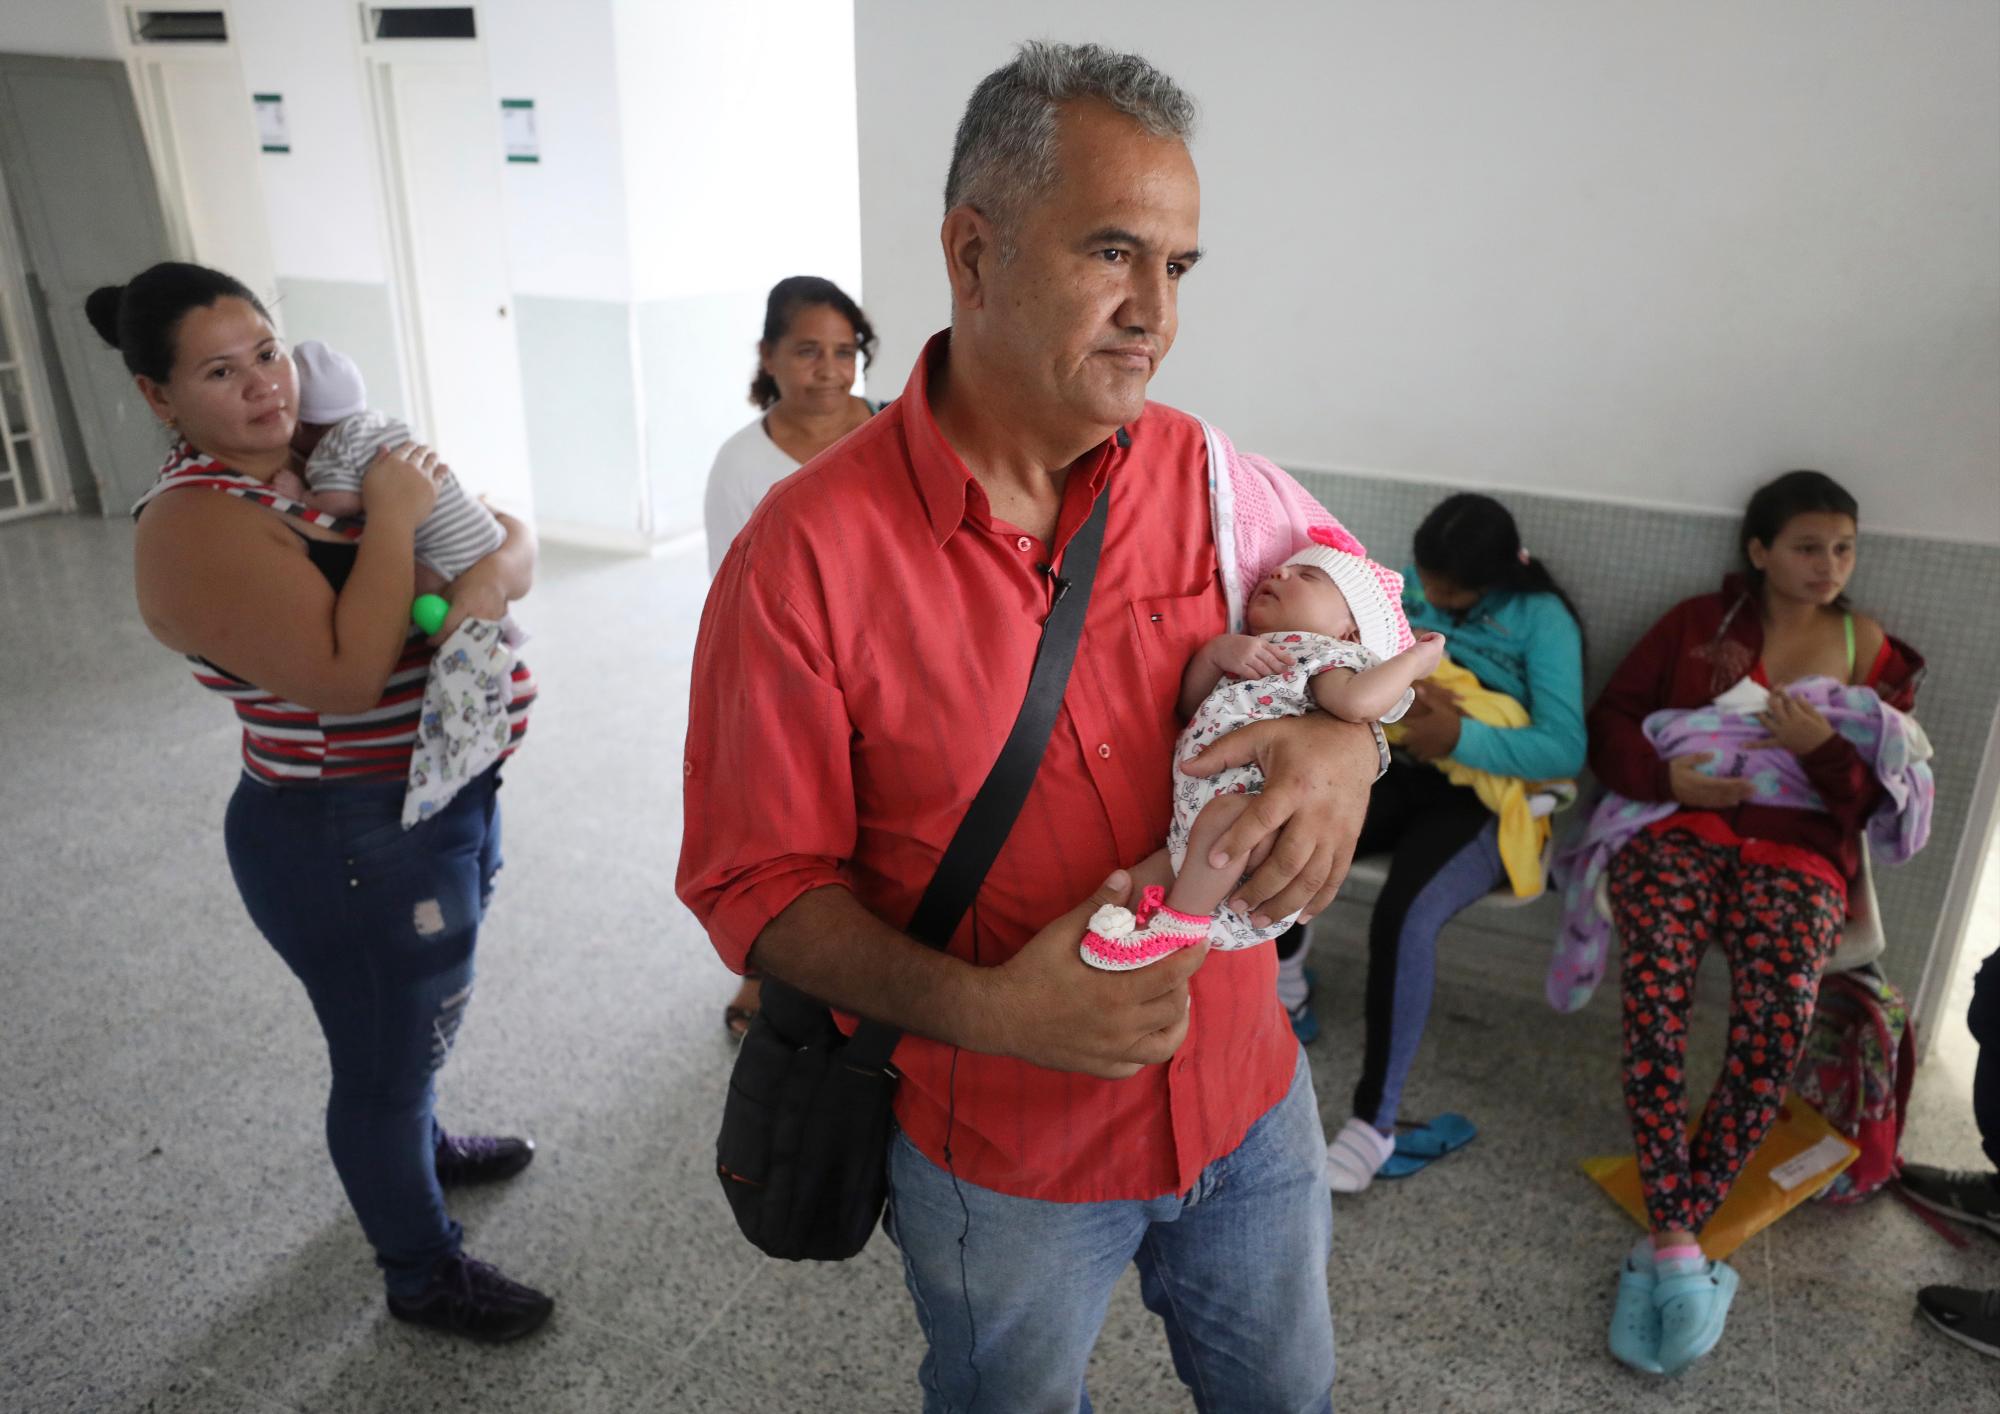 El expolicía venezolano Eduardo Bravo acuna a su hija Aranza Gabriela Bravo mientras espera en el hospital Erazmo Meoz a recibir su certificado de nacimiento, en Cúcuta, Colombia, el jueves 2 de mayo de 2019.